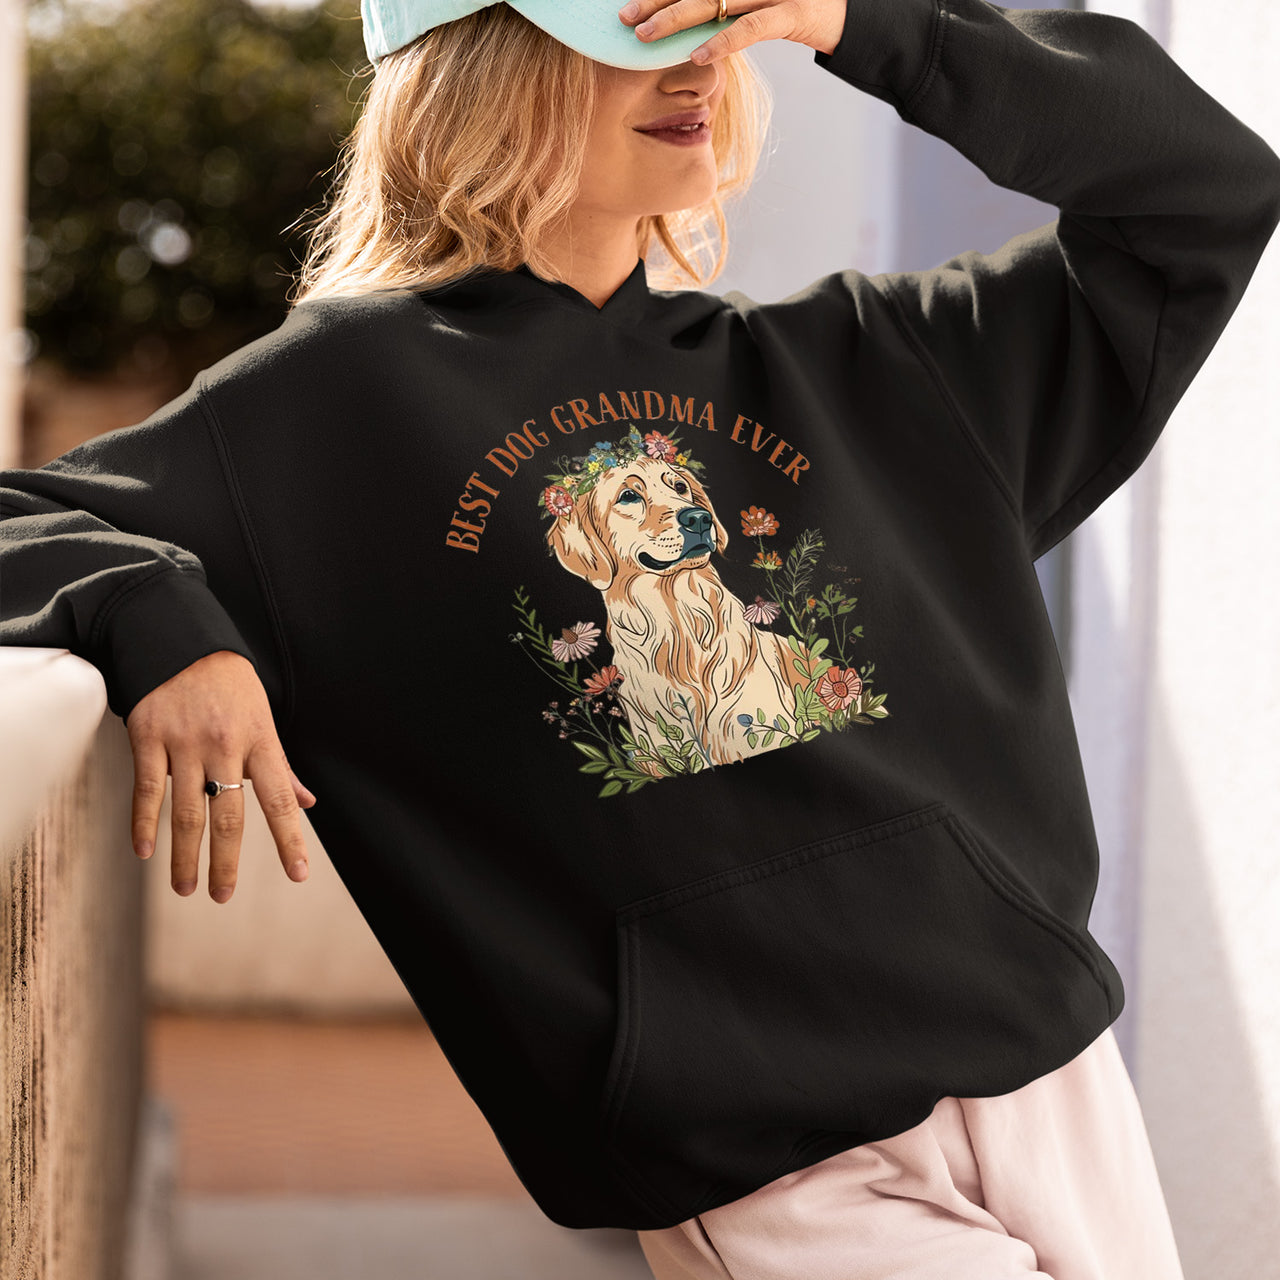 Golden Retriever Dog T-shirt, Pet Lover Shirt, Dog Lover Shirt, Best Dog Grandma Ever T-Shirt, Dog Owner Shirt, Gift For Dog Grandma, Funny Dog Shirts, Women Dog T-Shirt, Mother's Day Gift, Dog Lover Wife Gifts, Dog Shirt